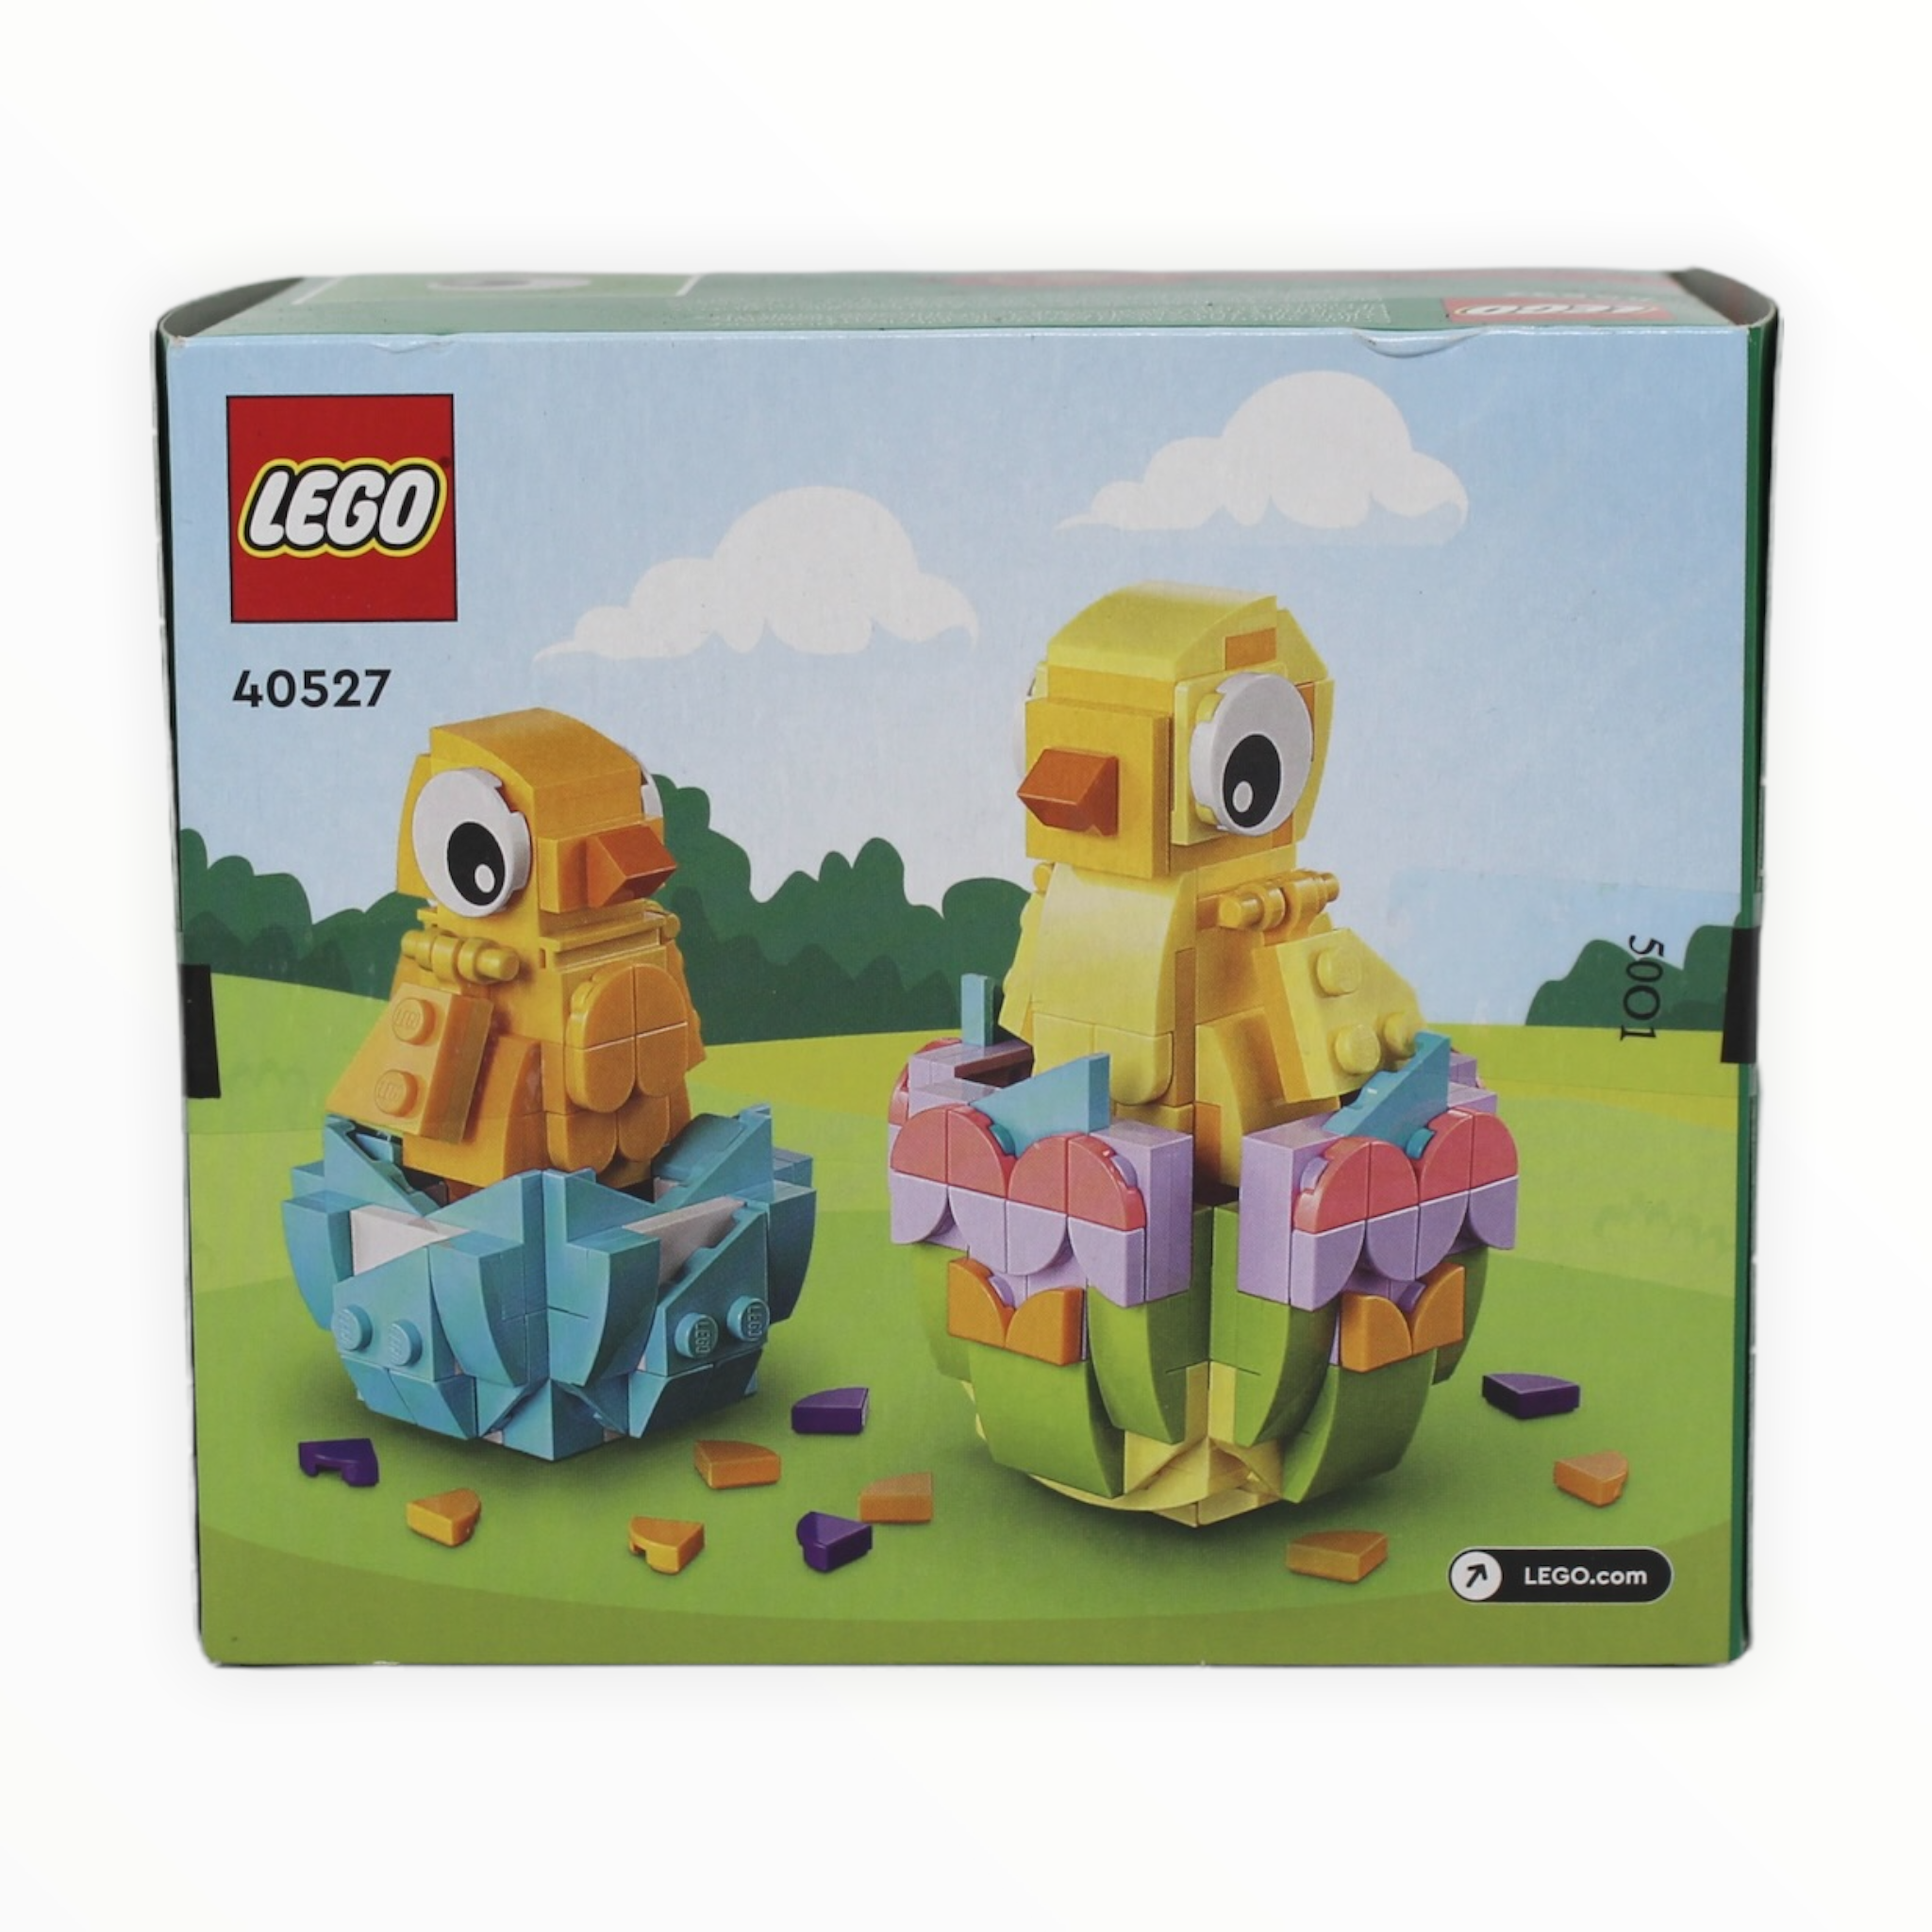 Retired Set 40527 LEGO Easter Chicks